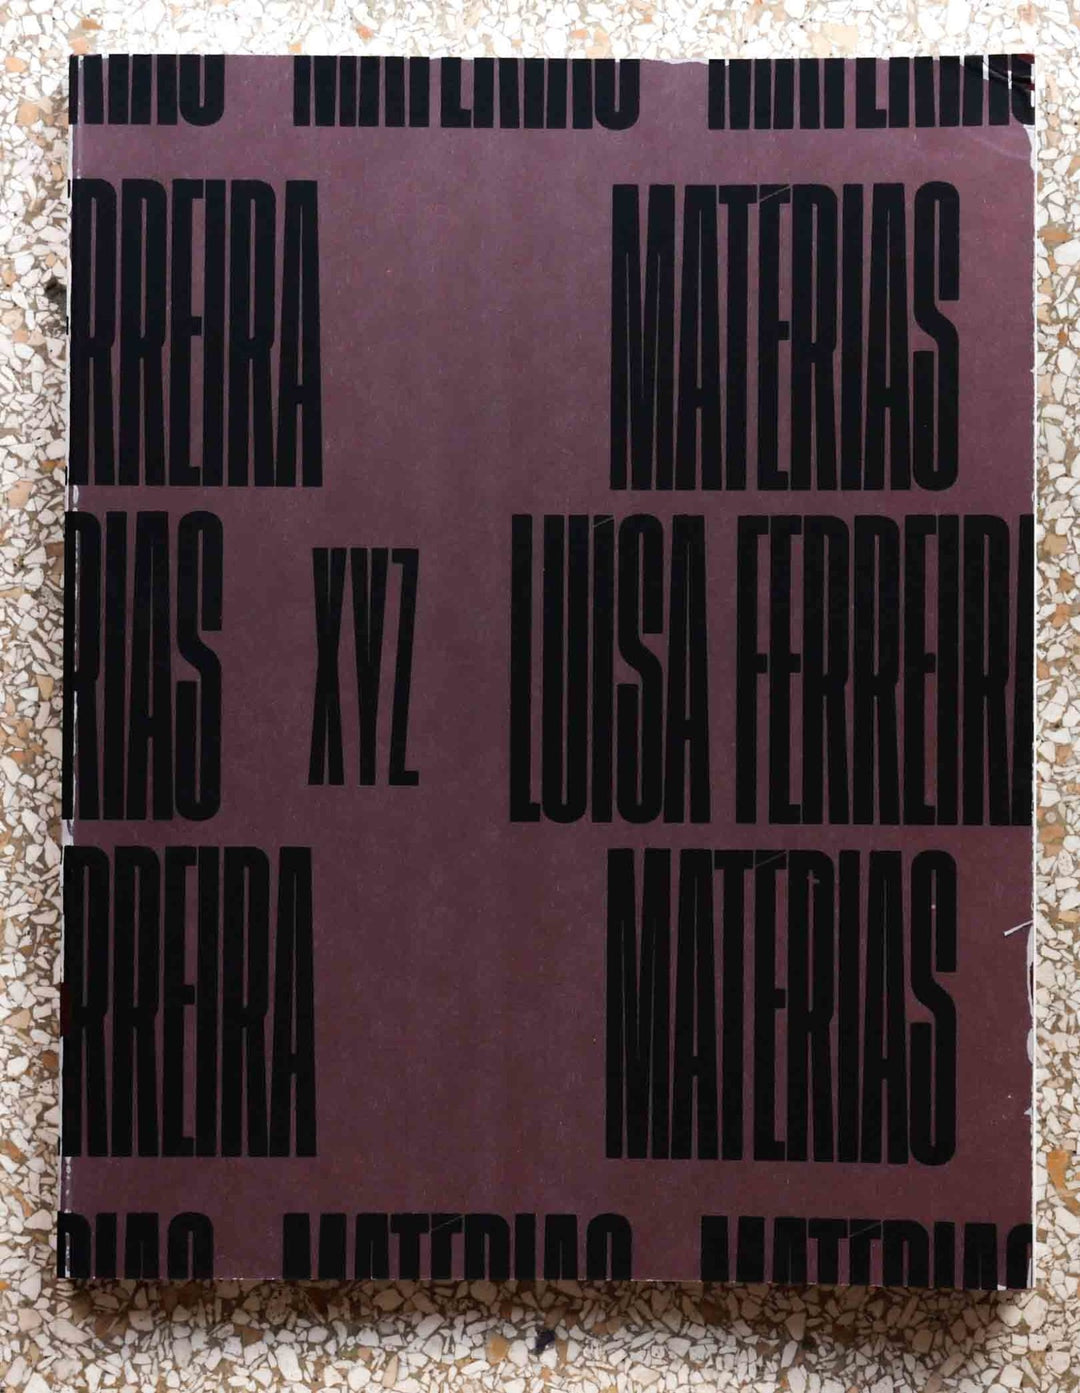 Matérias by Luísa Ferreira - Tipi bookshop